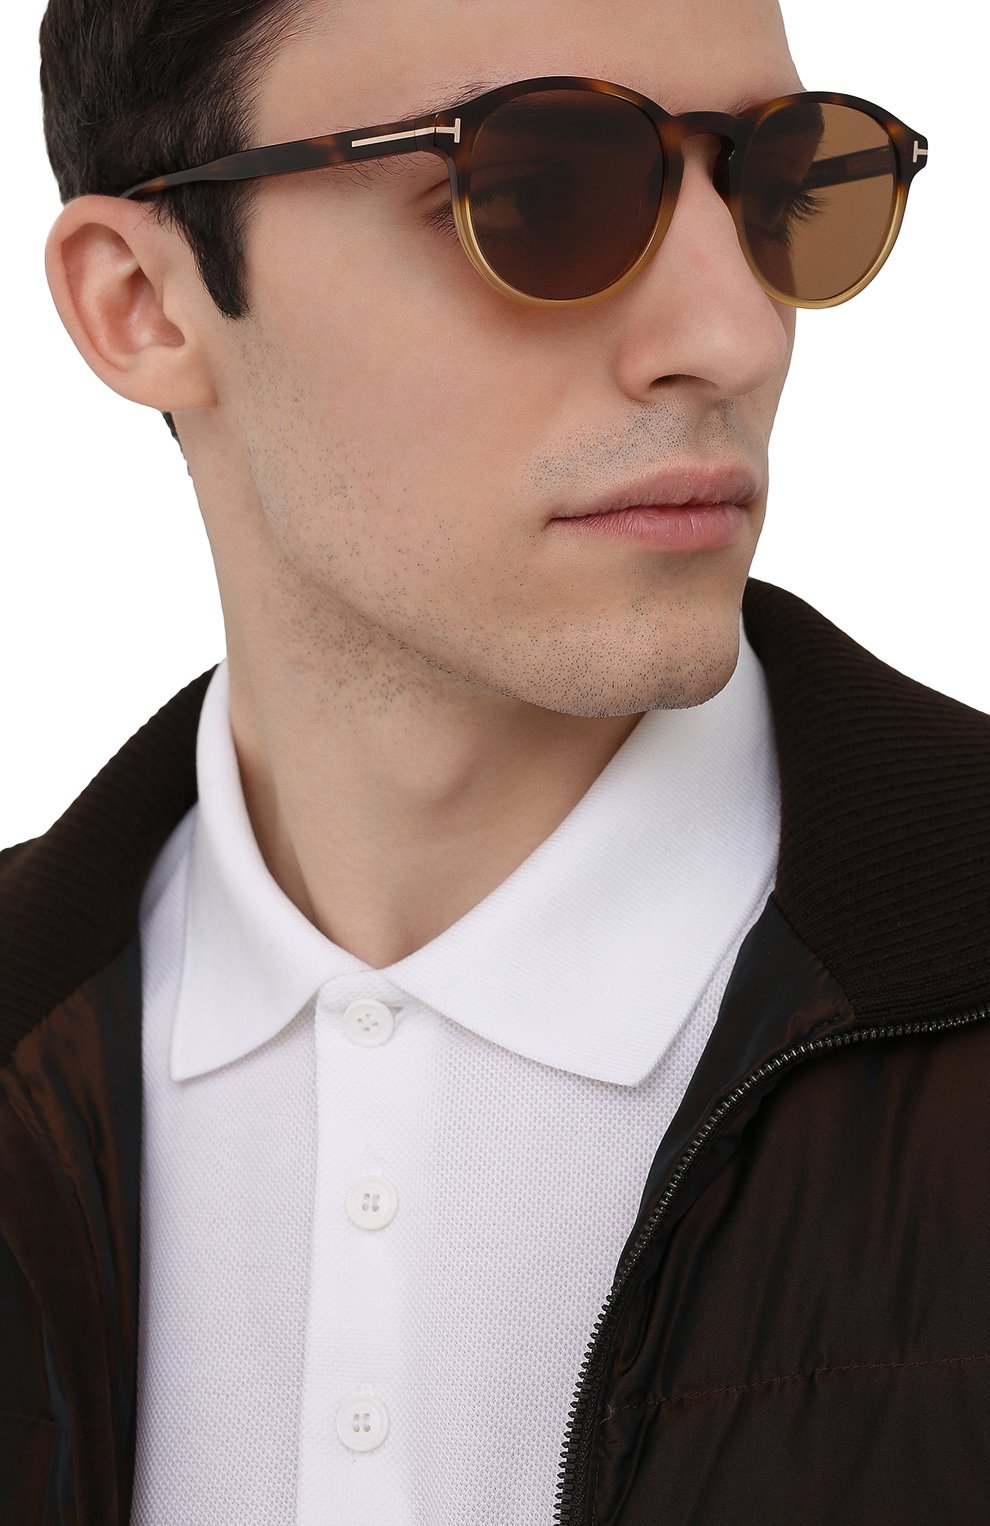 Женские коричневые солнцезащитные очки TOM FORD купить в интернет-магазине  ЦУМ, арт. TF834 55E